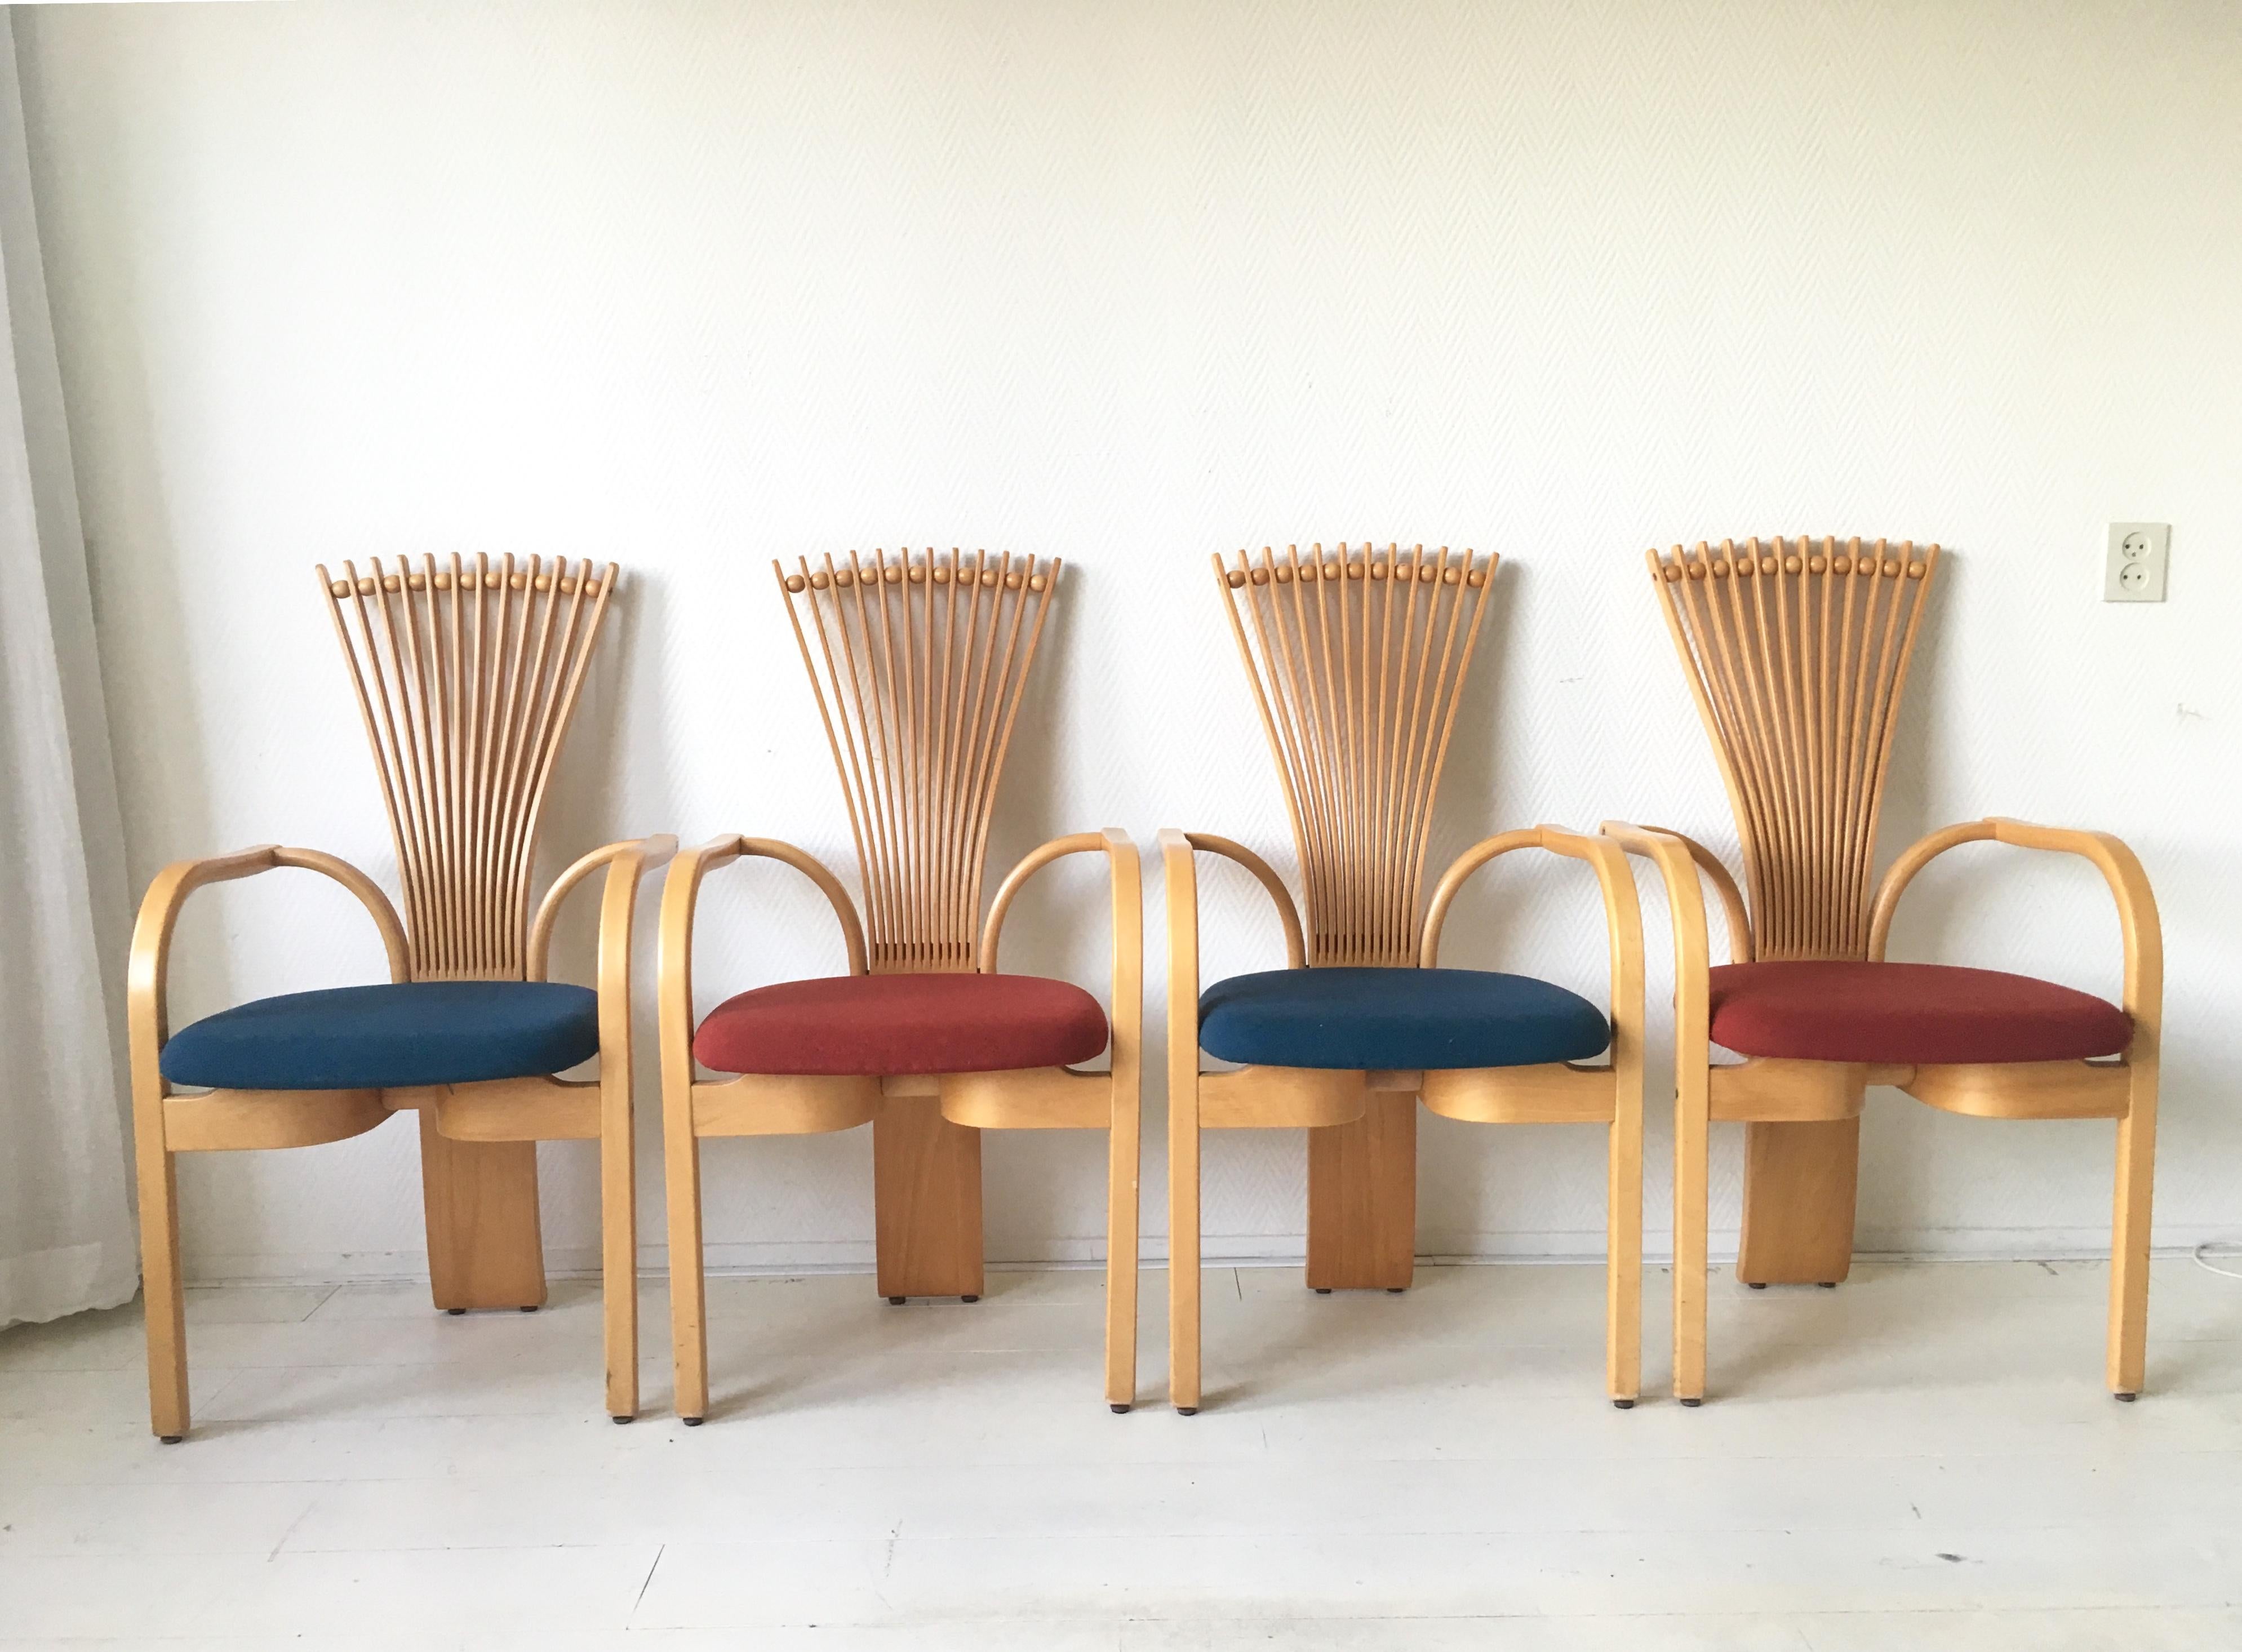 Ces sculpturales chaises de salle à manger norvégiennes à haut dossier ont été conçues par Torstein Niksen pour Westnofa. Les chaises Fan, ou Totem, sont dotées d'une base massive en chêne et d'un revêtement en laine bleue et rouge. Si vous le